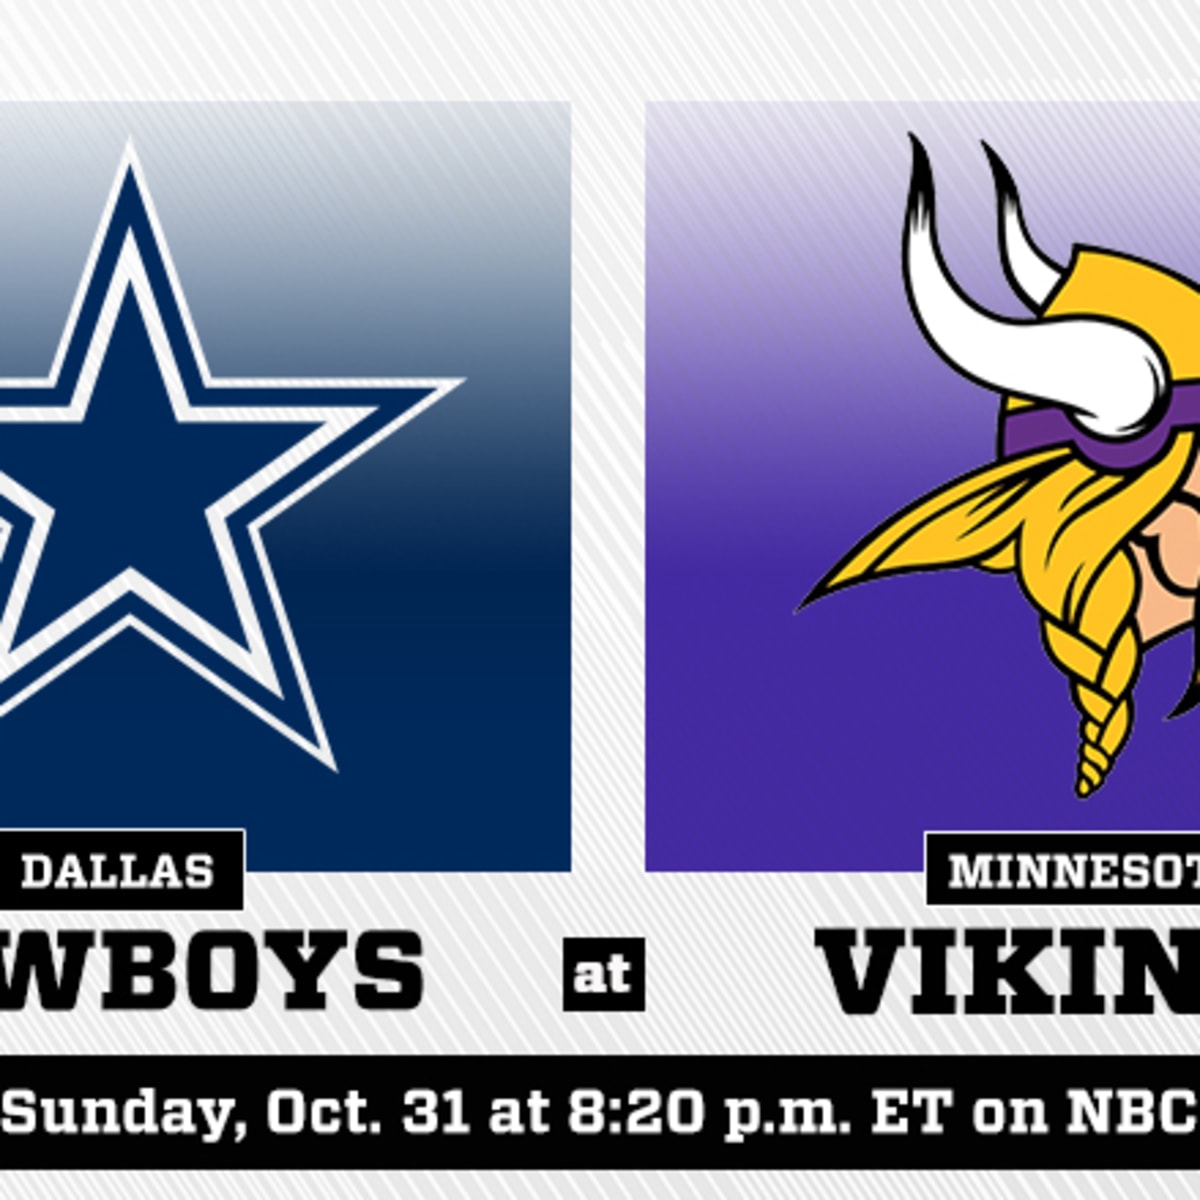 Dallas Cowboys 20, Minnesota Vikings 16: Vikings take well